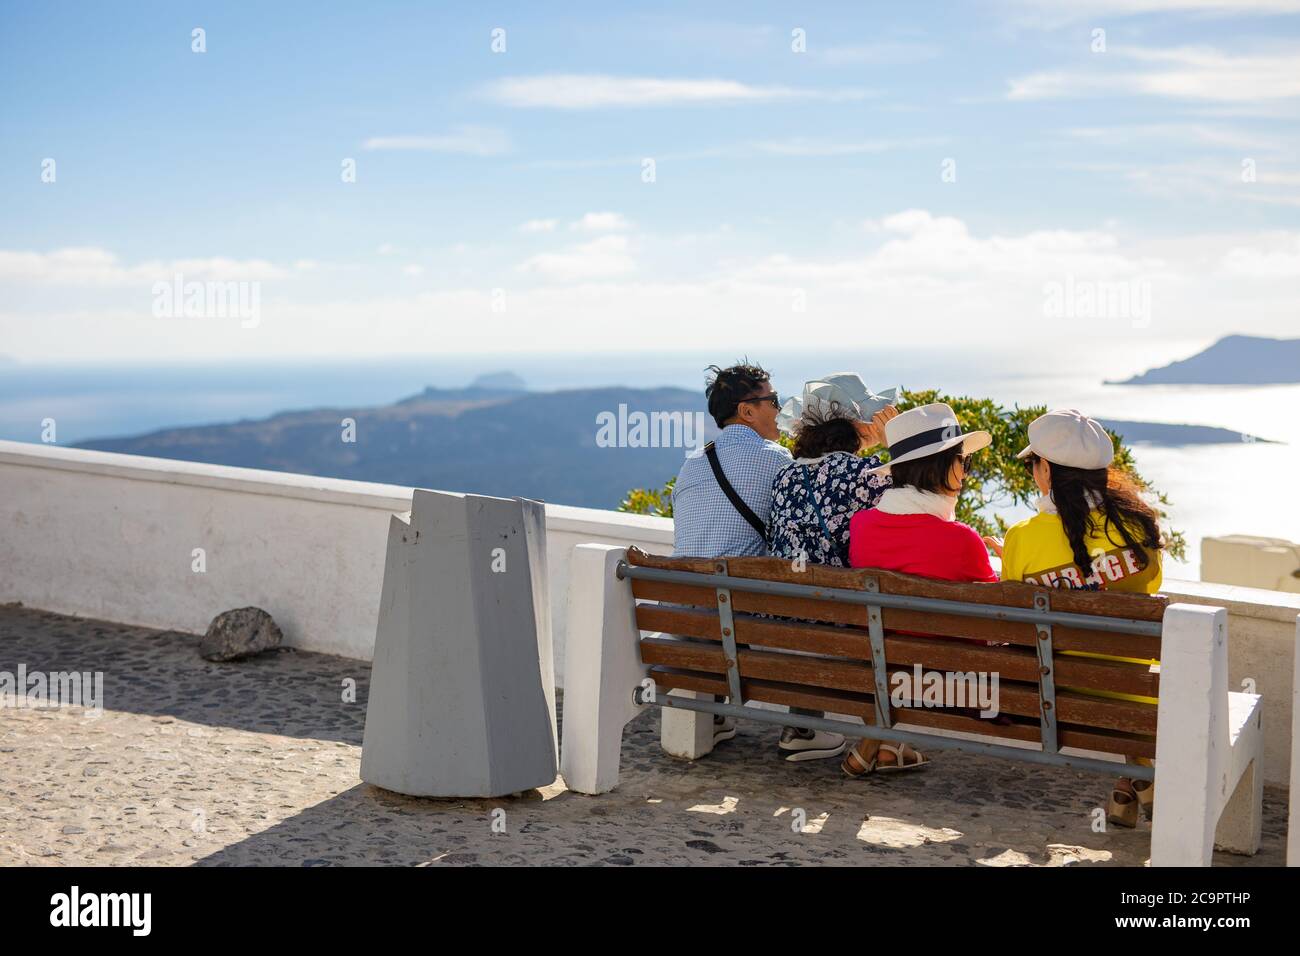 10.10.19 - Santorini: Asiatischer Tourist, der die Aussicht von Caldera in Santorini, Griechenland genießt. Reiseabenteuer, Tourismuskonzept Stockfoto